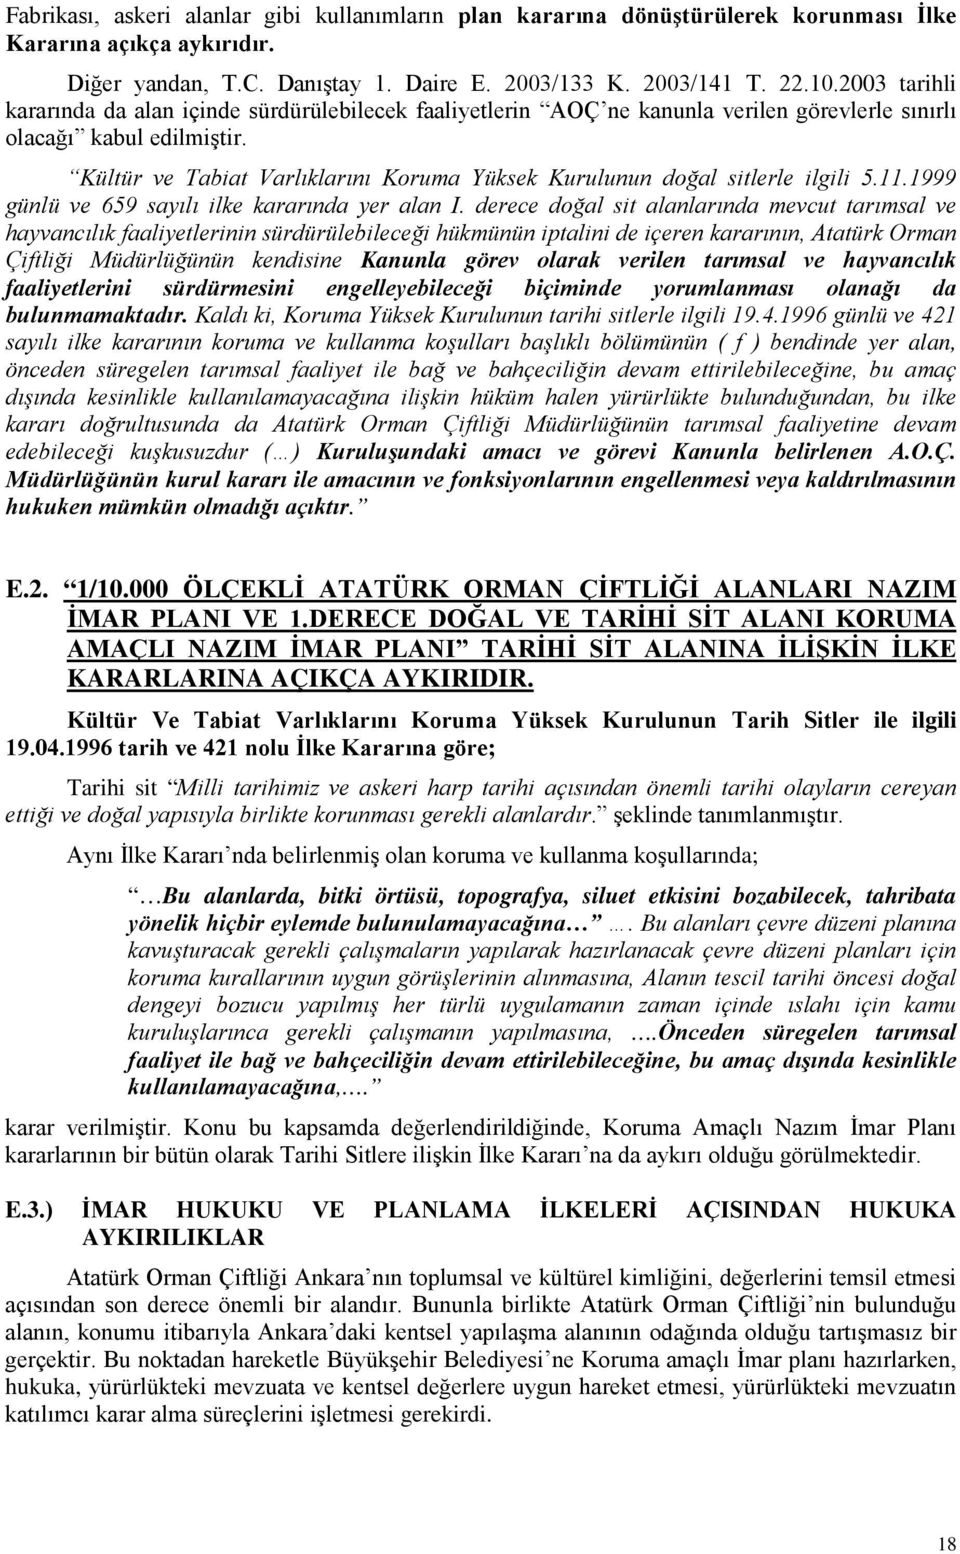 Kültür ve Tabiat Varlıklarını Koruma Yüksek Kurulunun doğal sitlerle ilgili 5.11.1999 günlü ve 659 sayılı ilke kararında yer alan I.